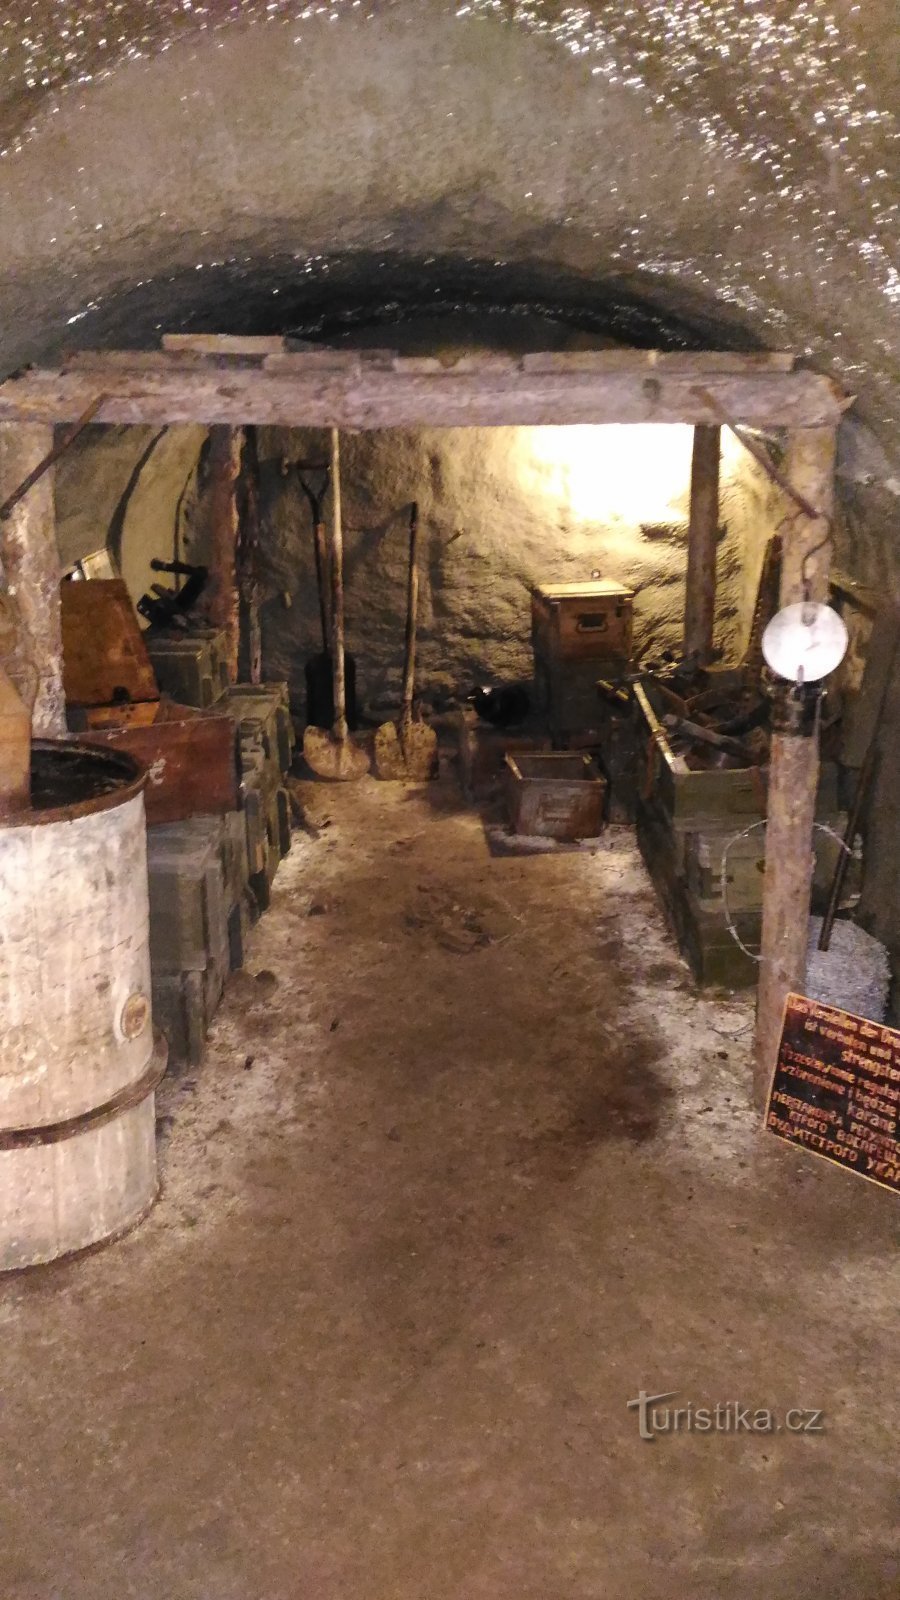 Ausstellung in einem mittelalterlichen Keller in Litoměřice.